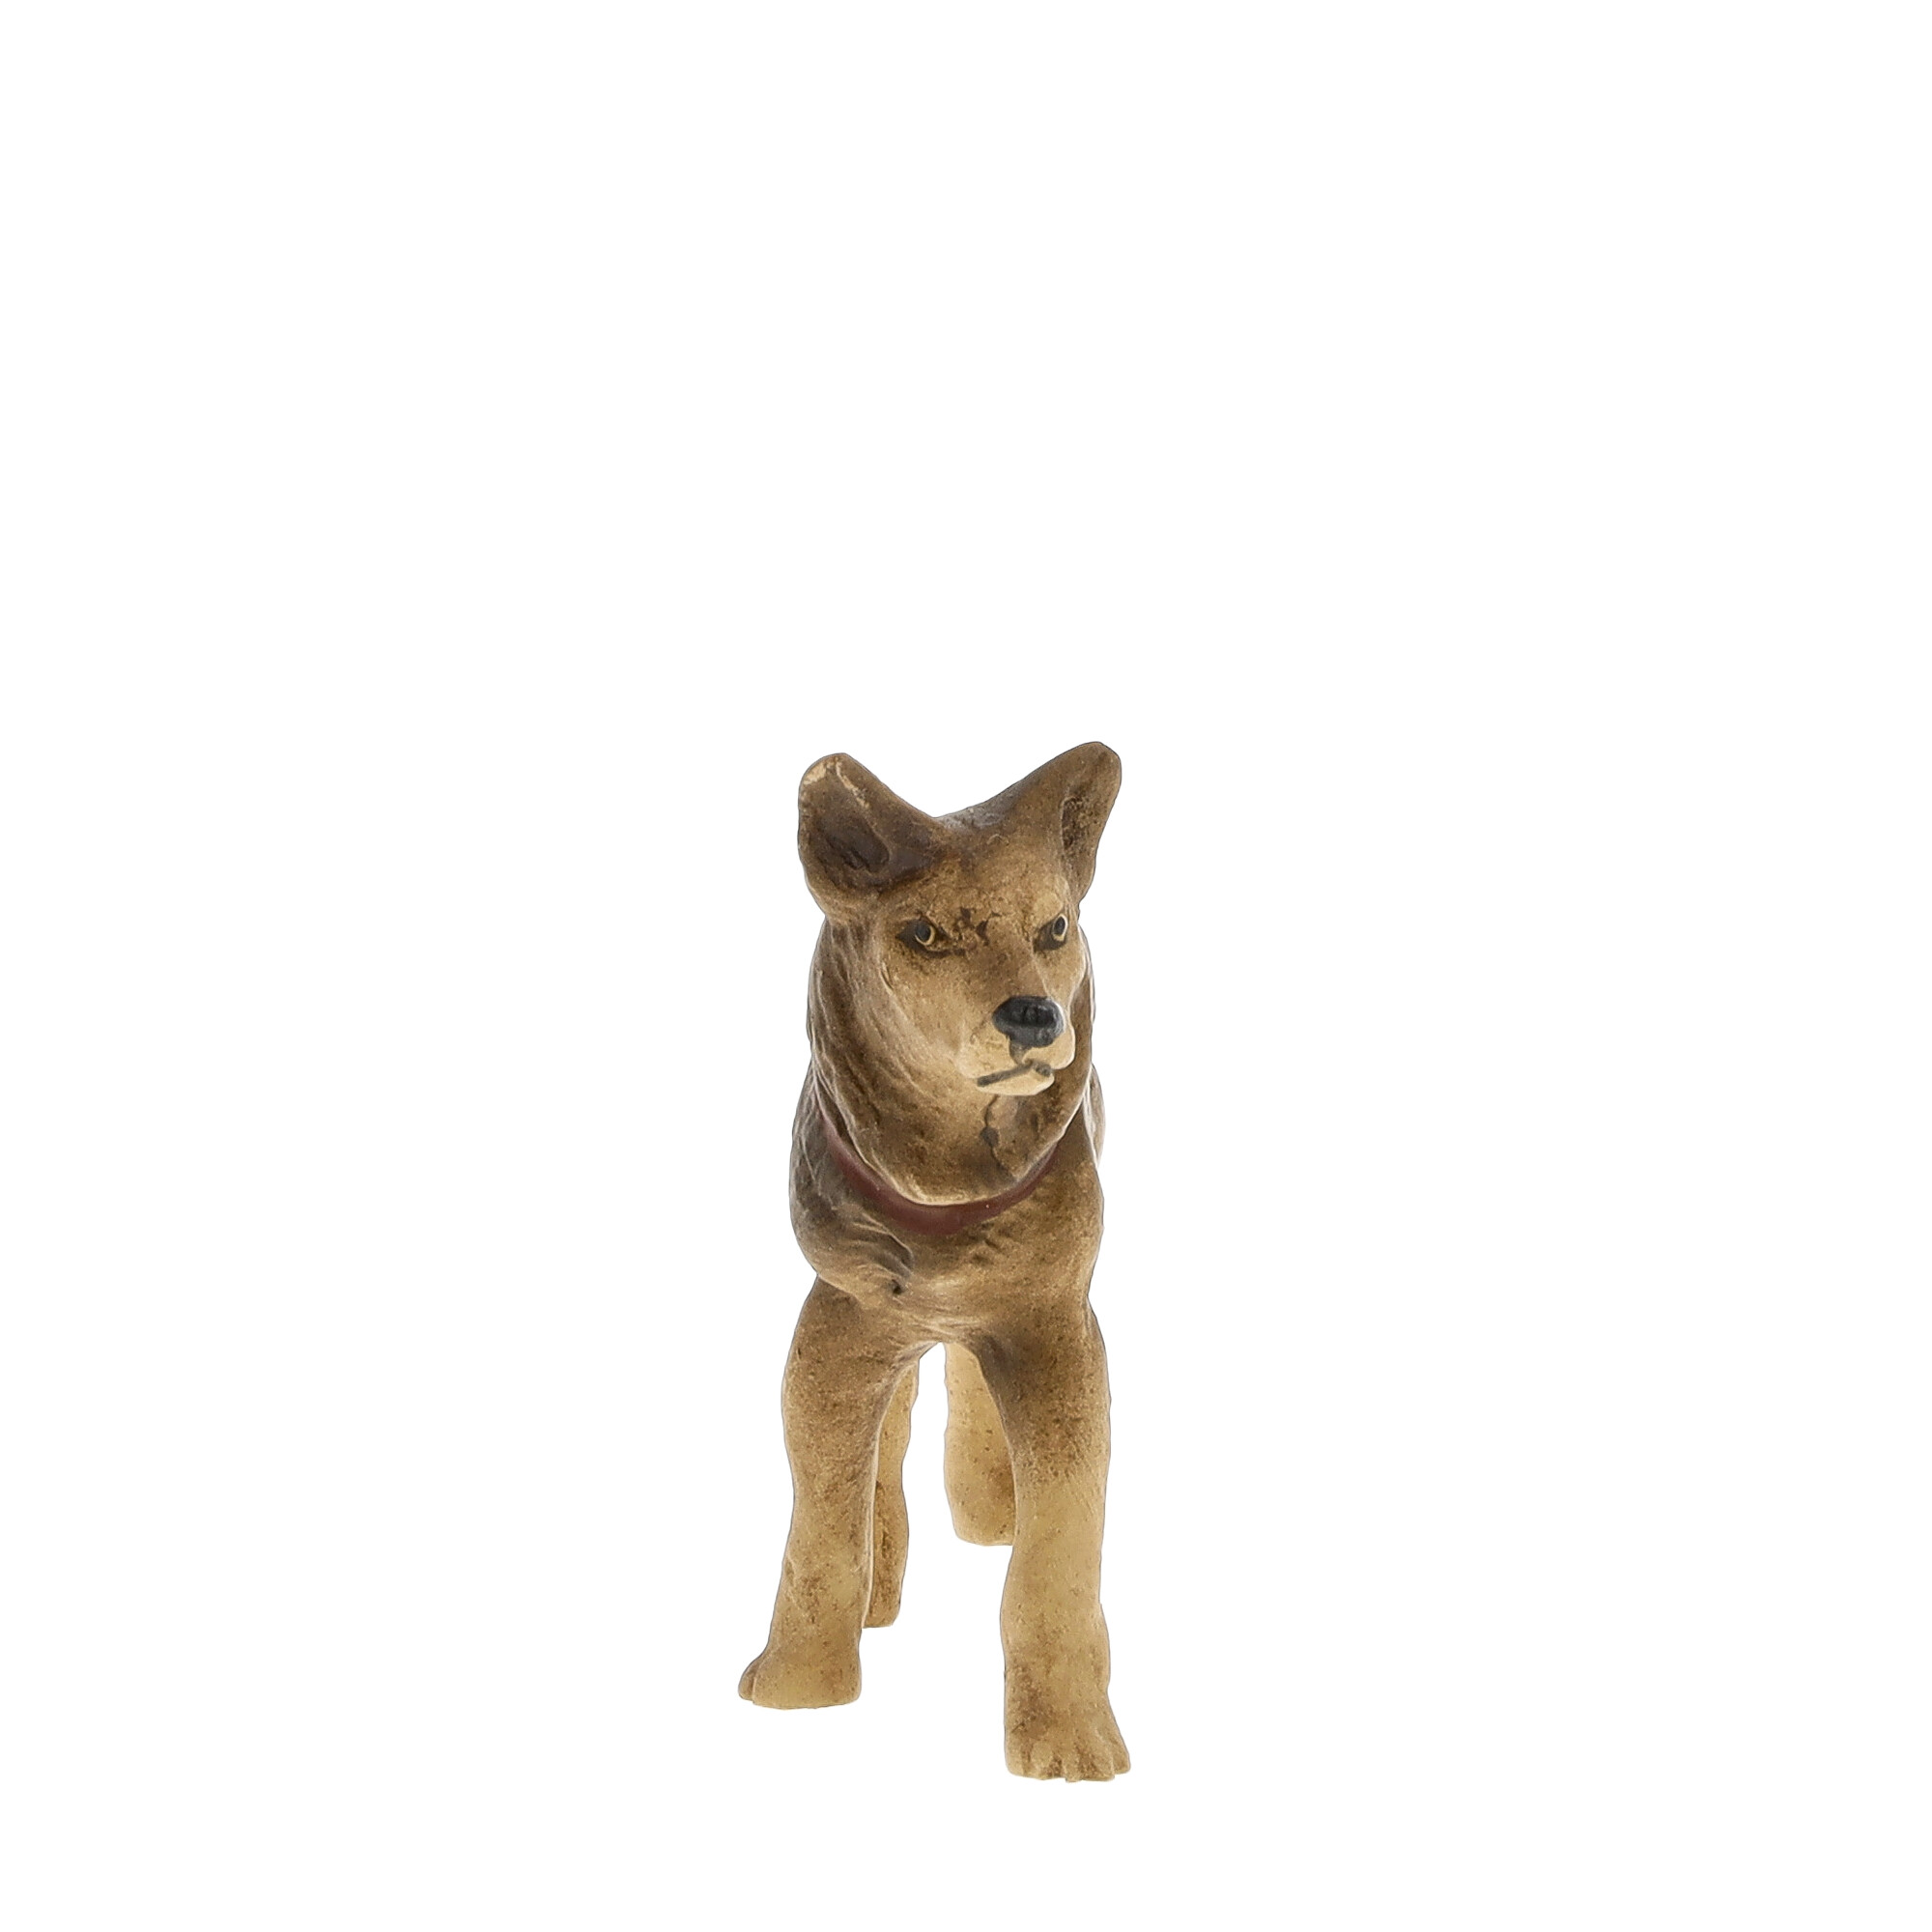 Schäferhund stehend, zu 11 - 12cm Figuren passend - MAROLIN Krippenfigur